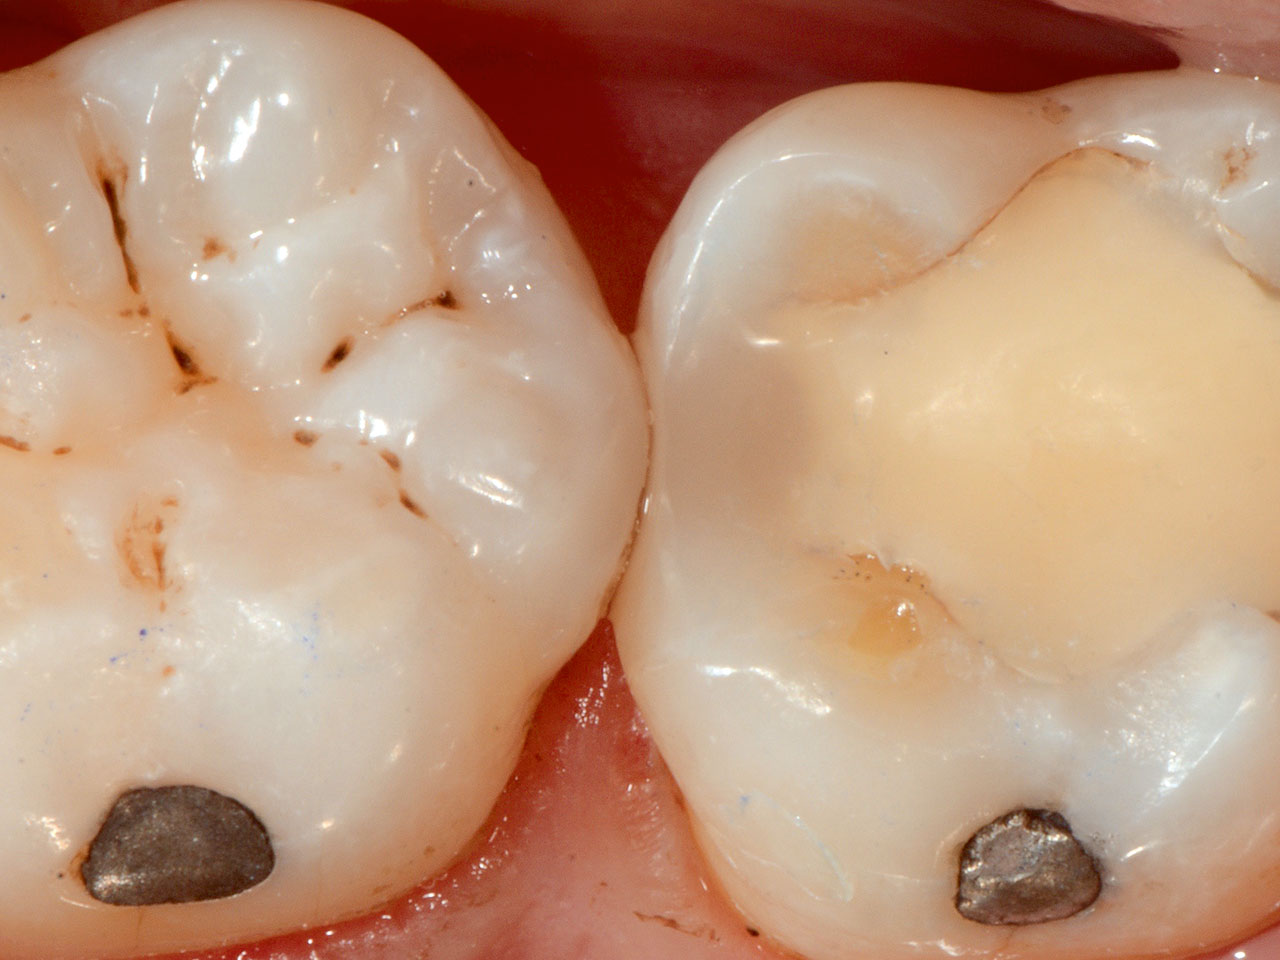 Abb. 9 Die Restauration des Zahns erfolgte mittels Komposit (Ceram.X Universal, Dentsply Sirona).